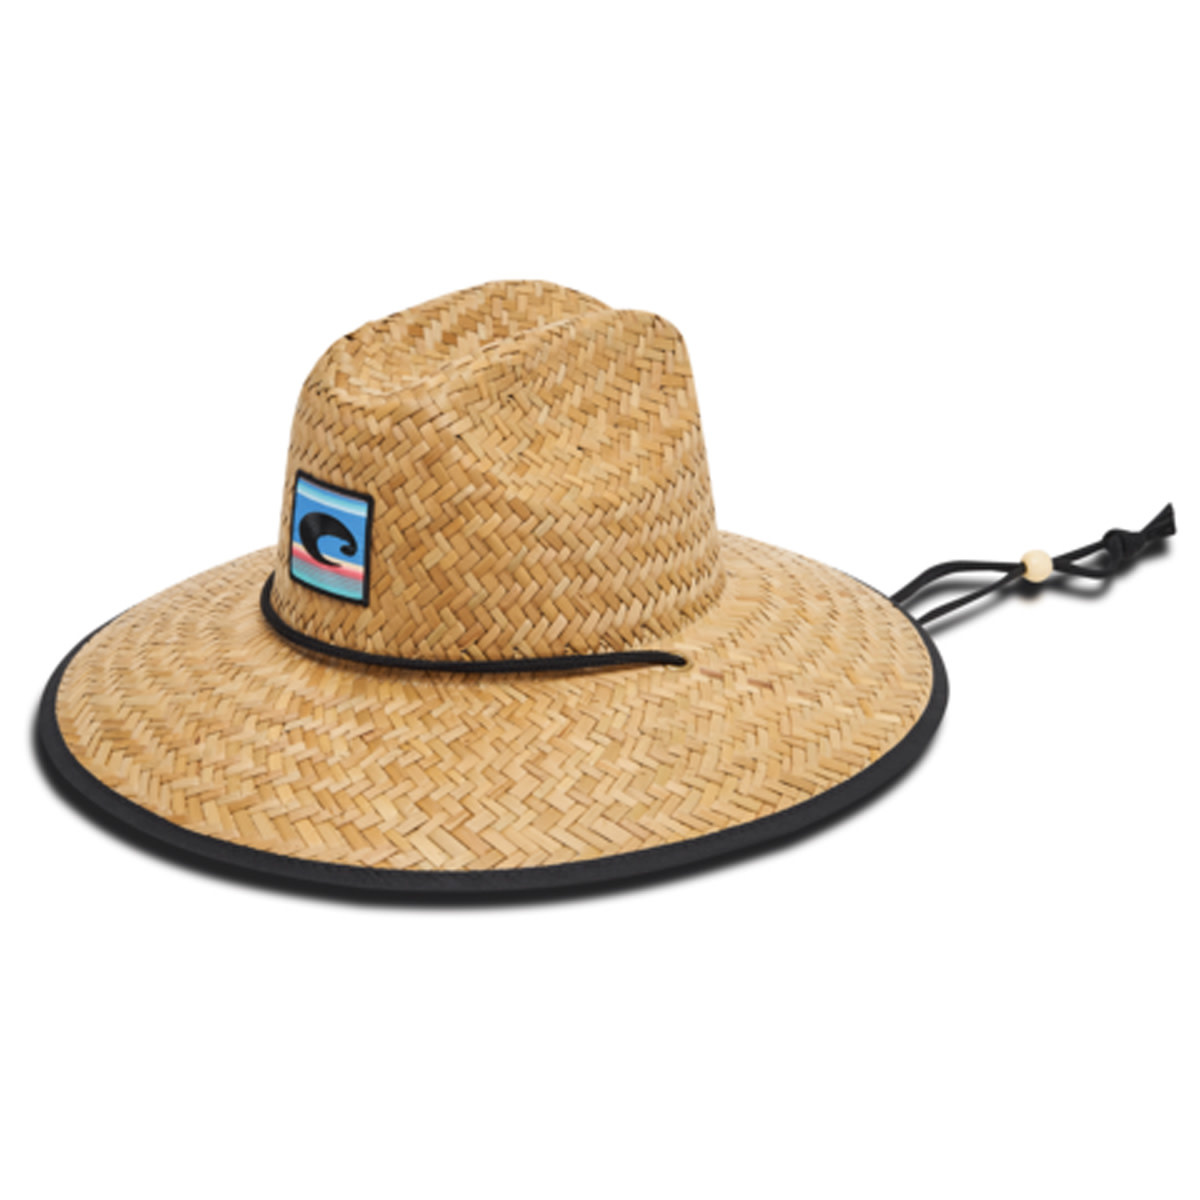 Costa - Lifeguard Straw Hat Fiesta Print